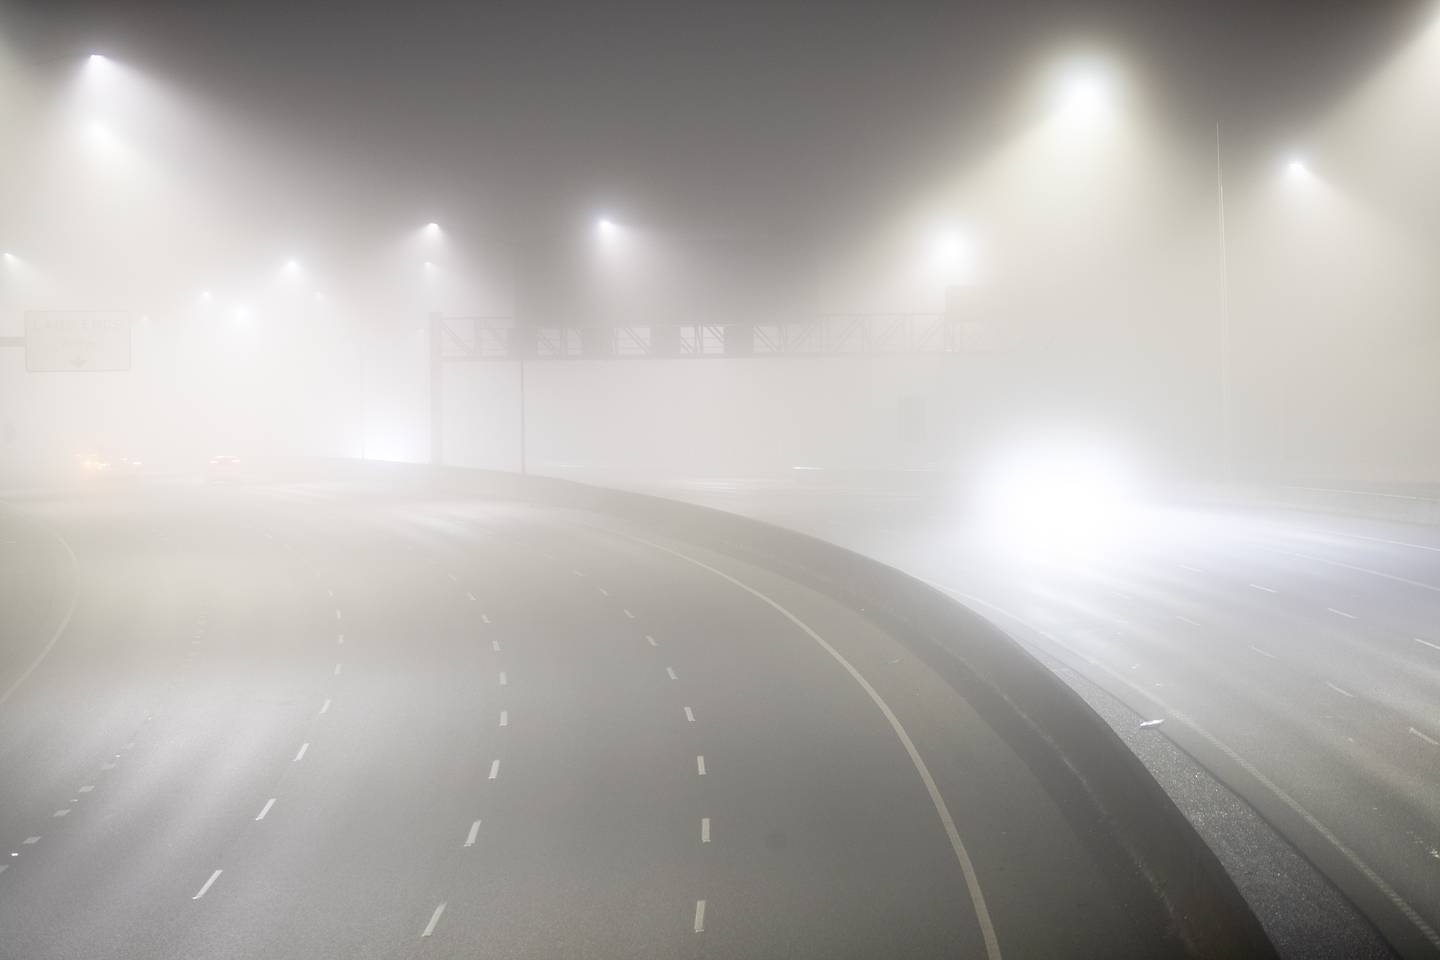 周一早上 5 点 25 分拍摄的照片显示了西北高速公路上的大雾。 照片/海登伍德沃德